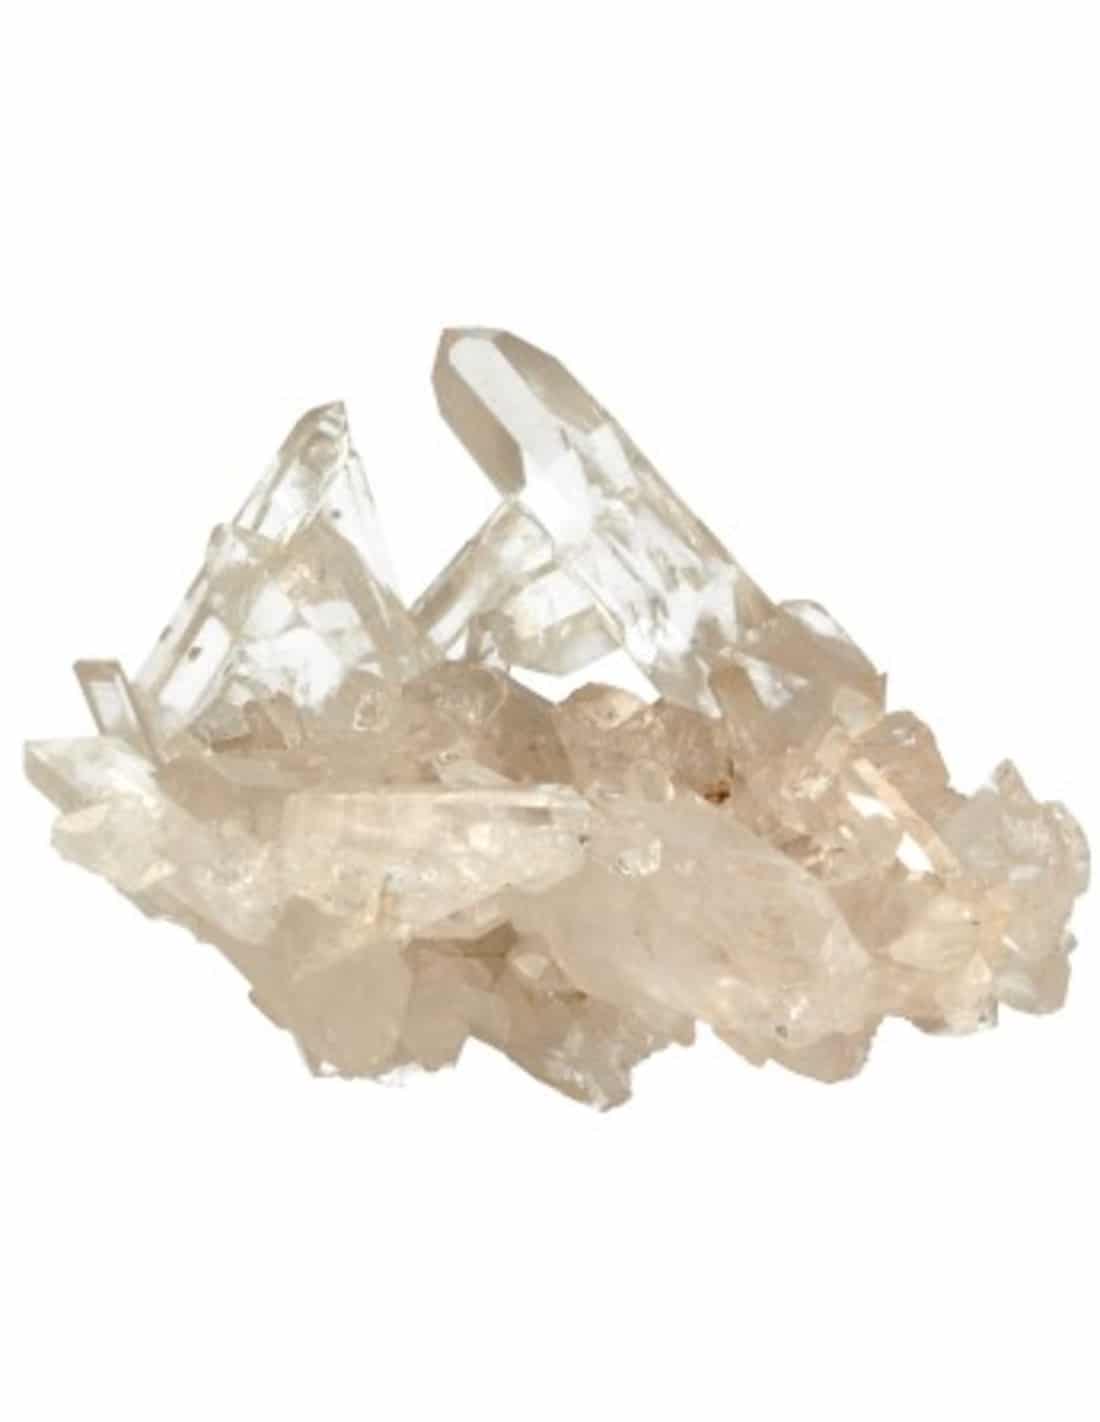 Ruwe Edelsteen Bergkristal Arkansas (Model 9)